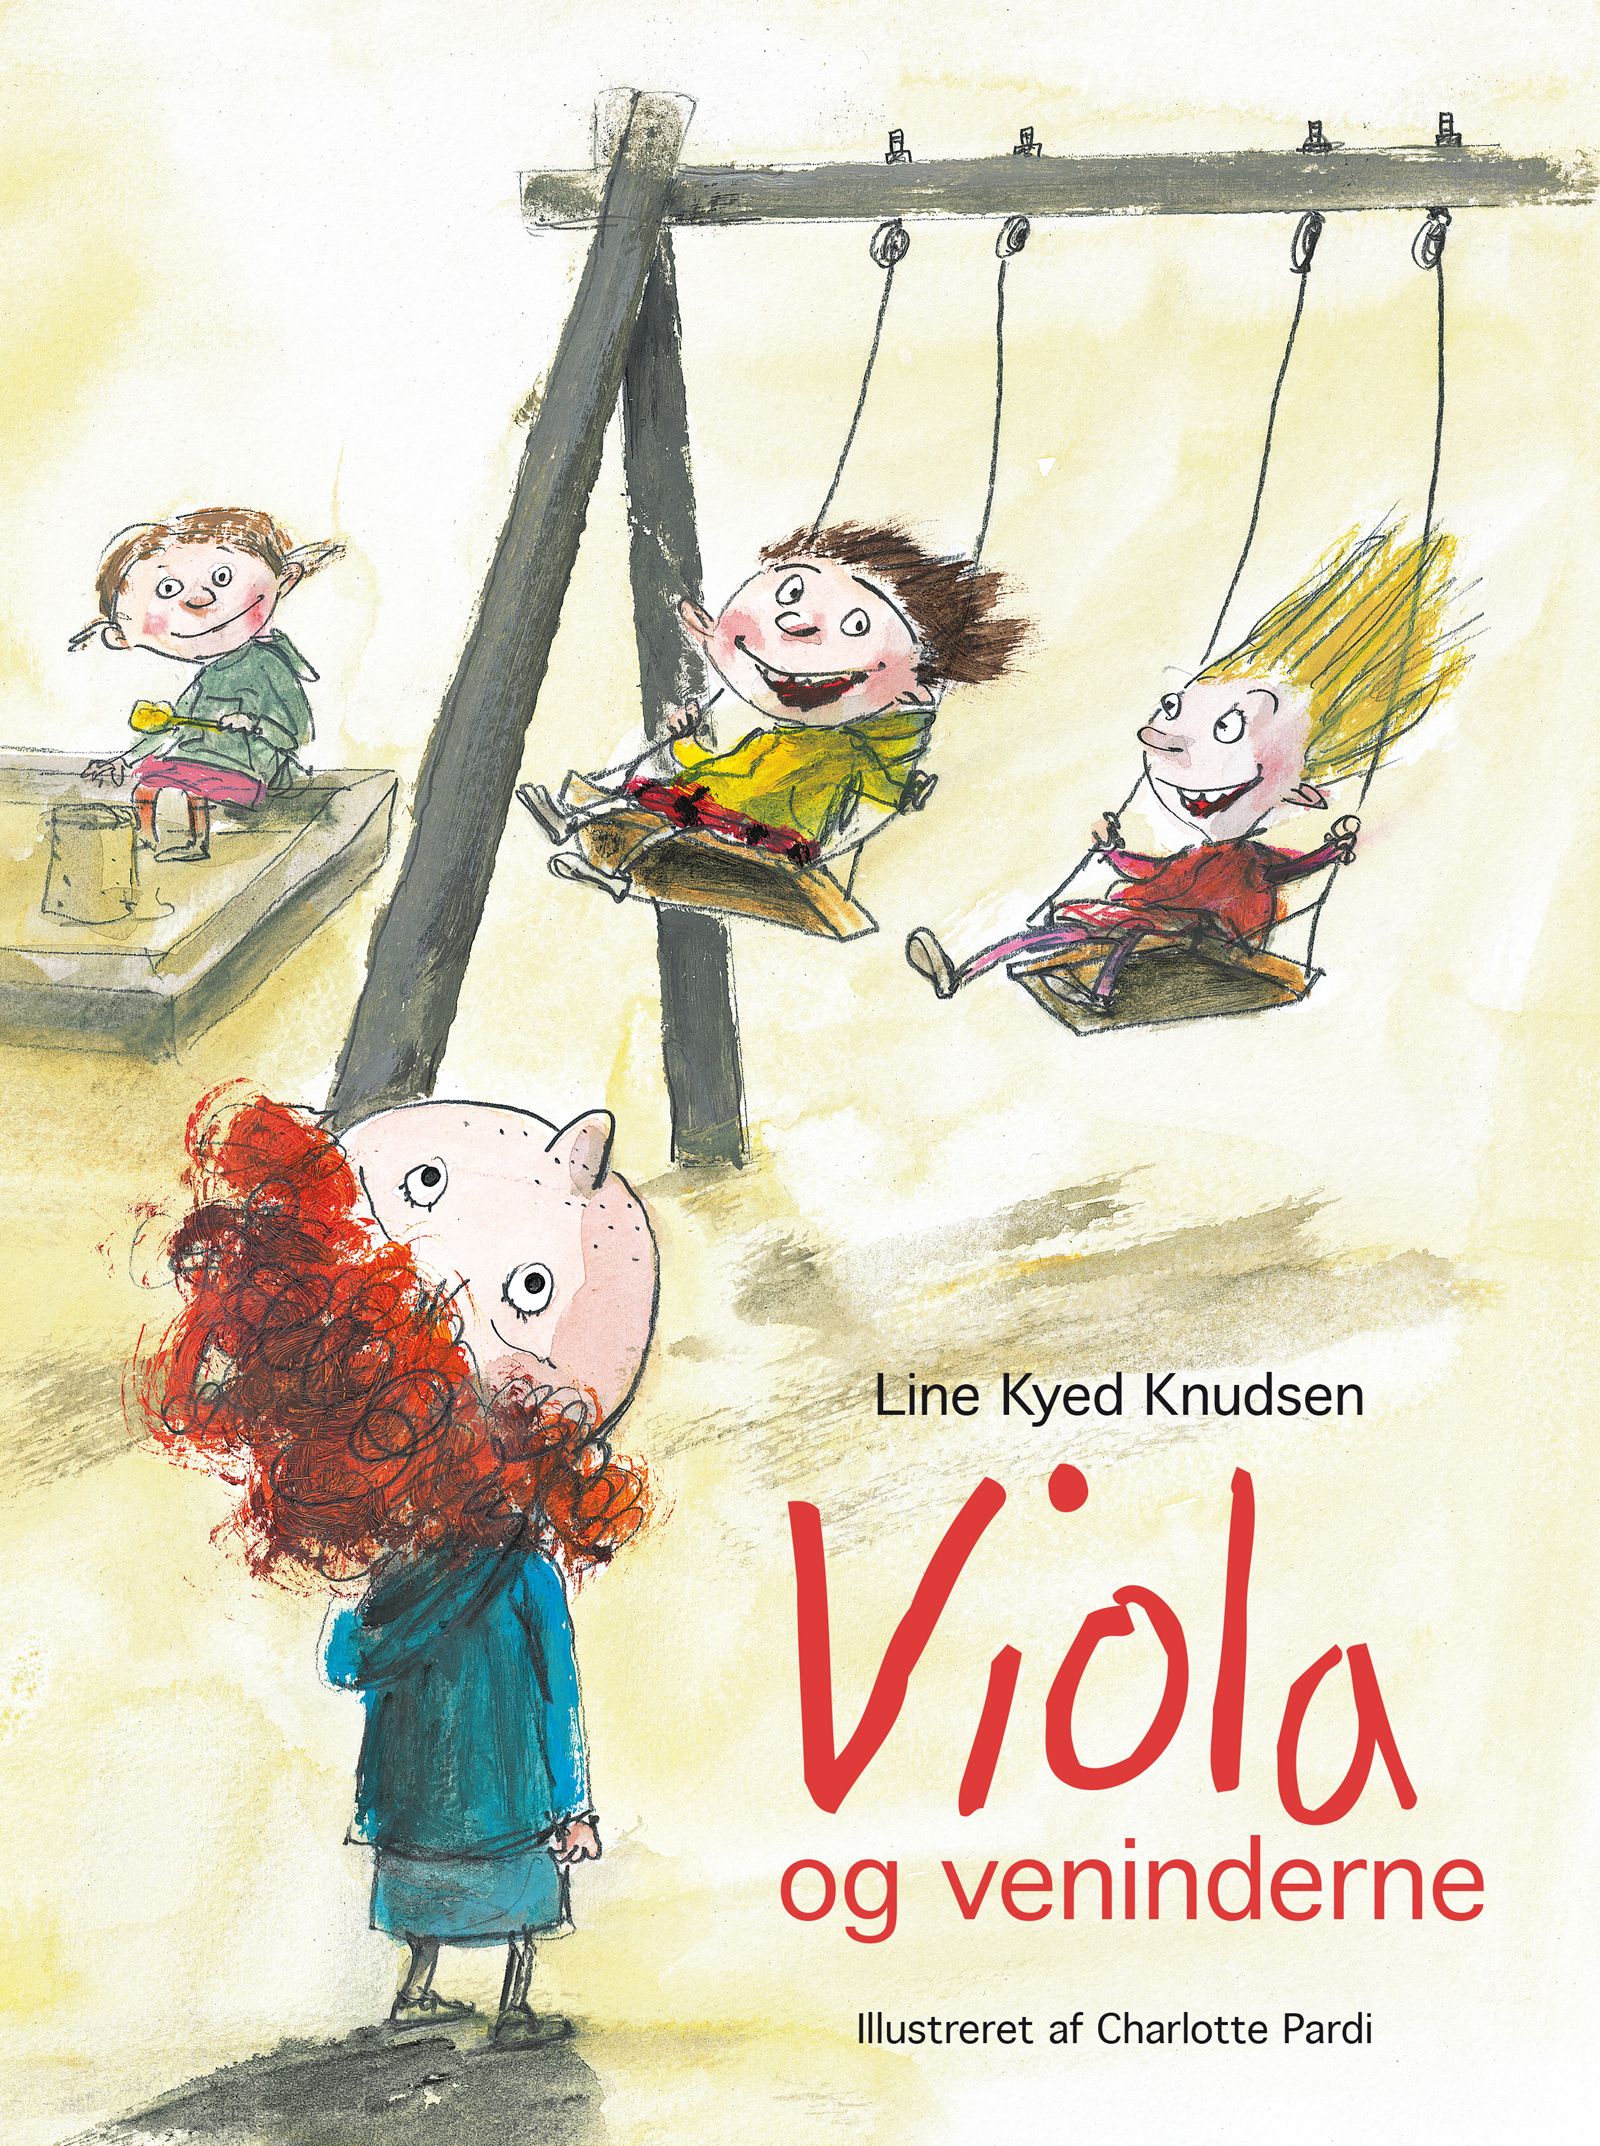 Viola og veninderne, e-bog af Line Kyed Knudsen